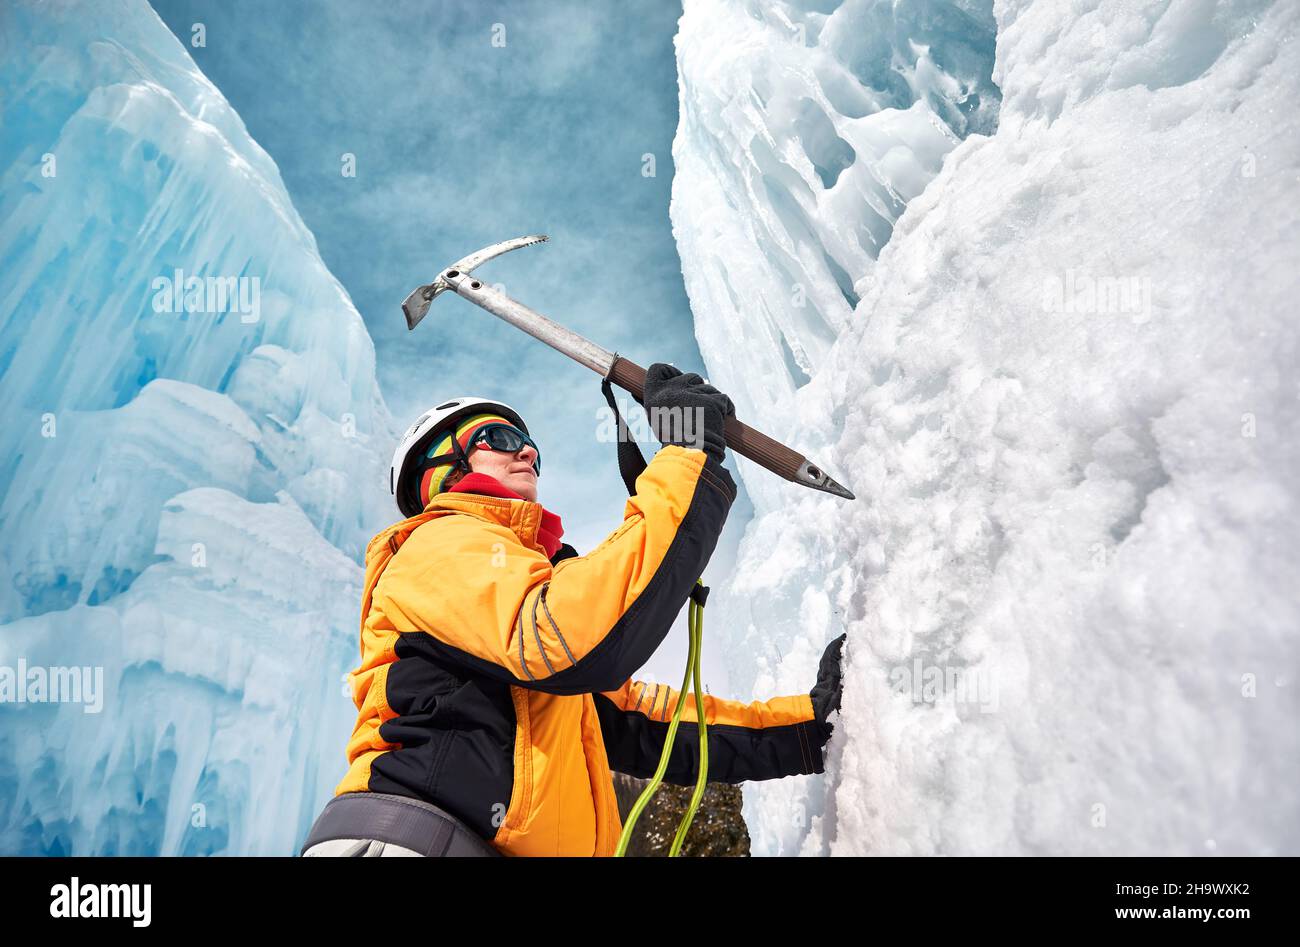 La mujer está subiendo una cascada congelada con hacha de hielo en chaqueta naranja en las montañas. Concepto de alpinismo y alpinismo deportivo. Foto de stock